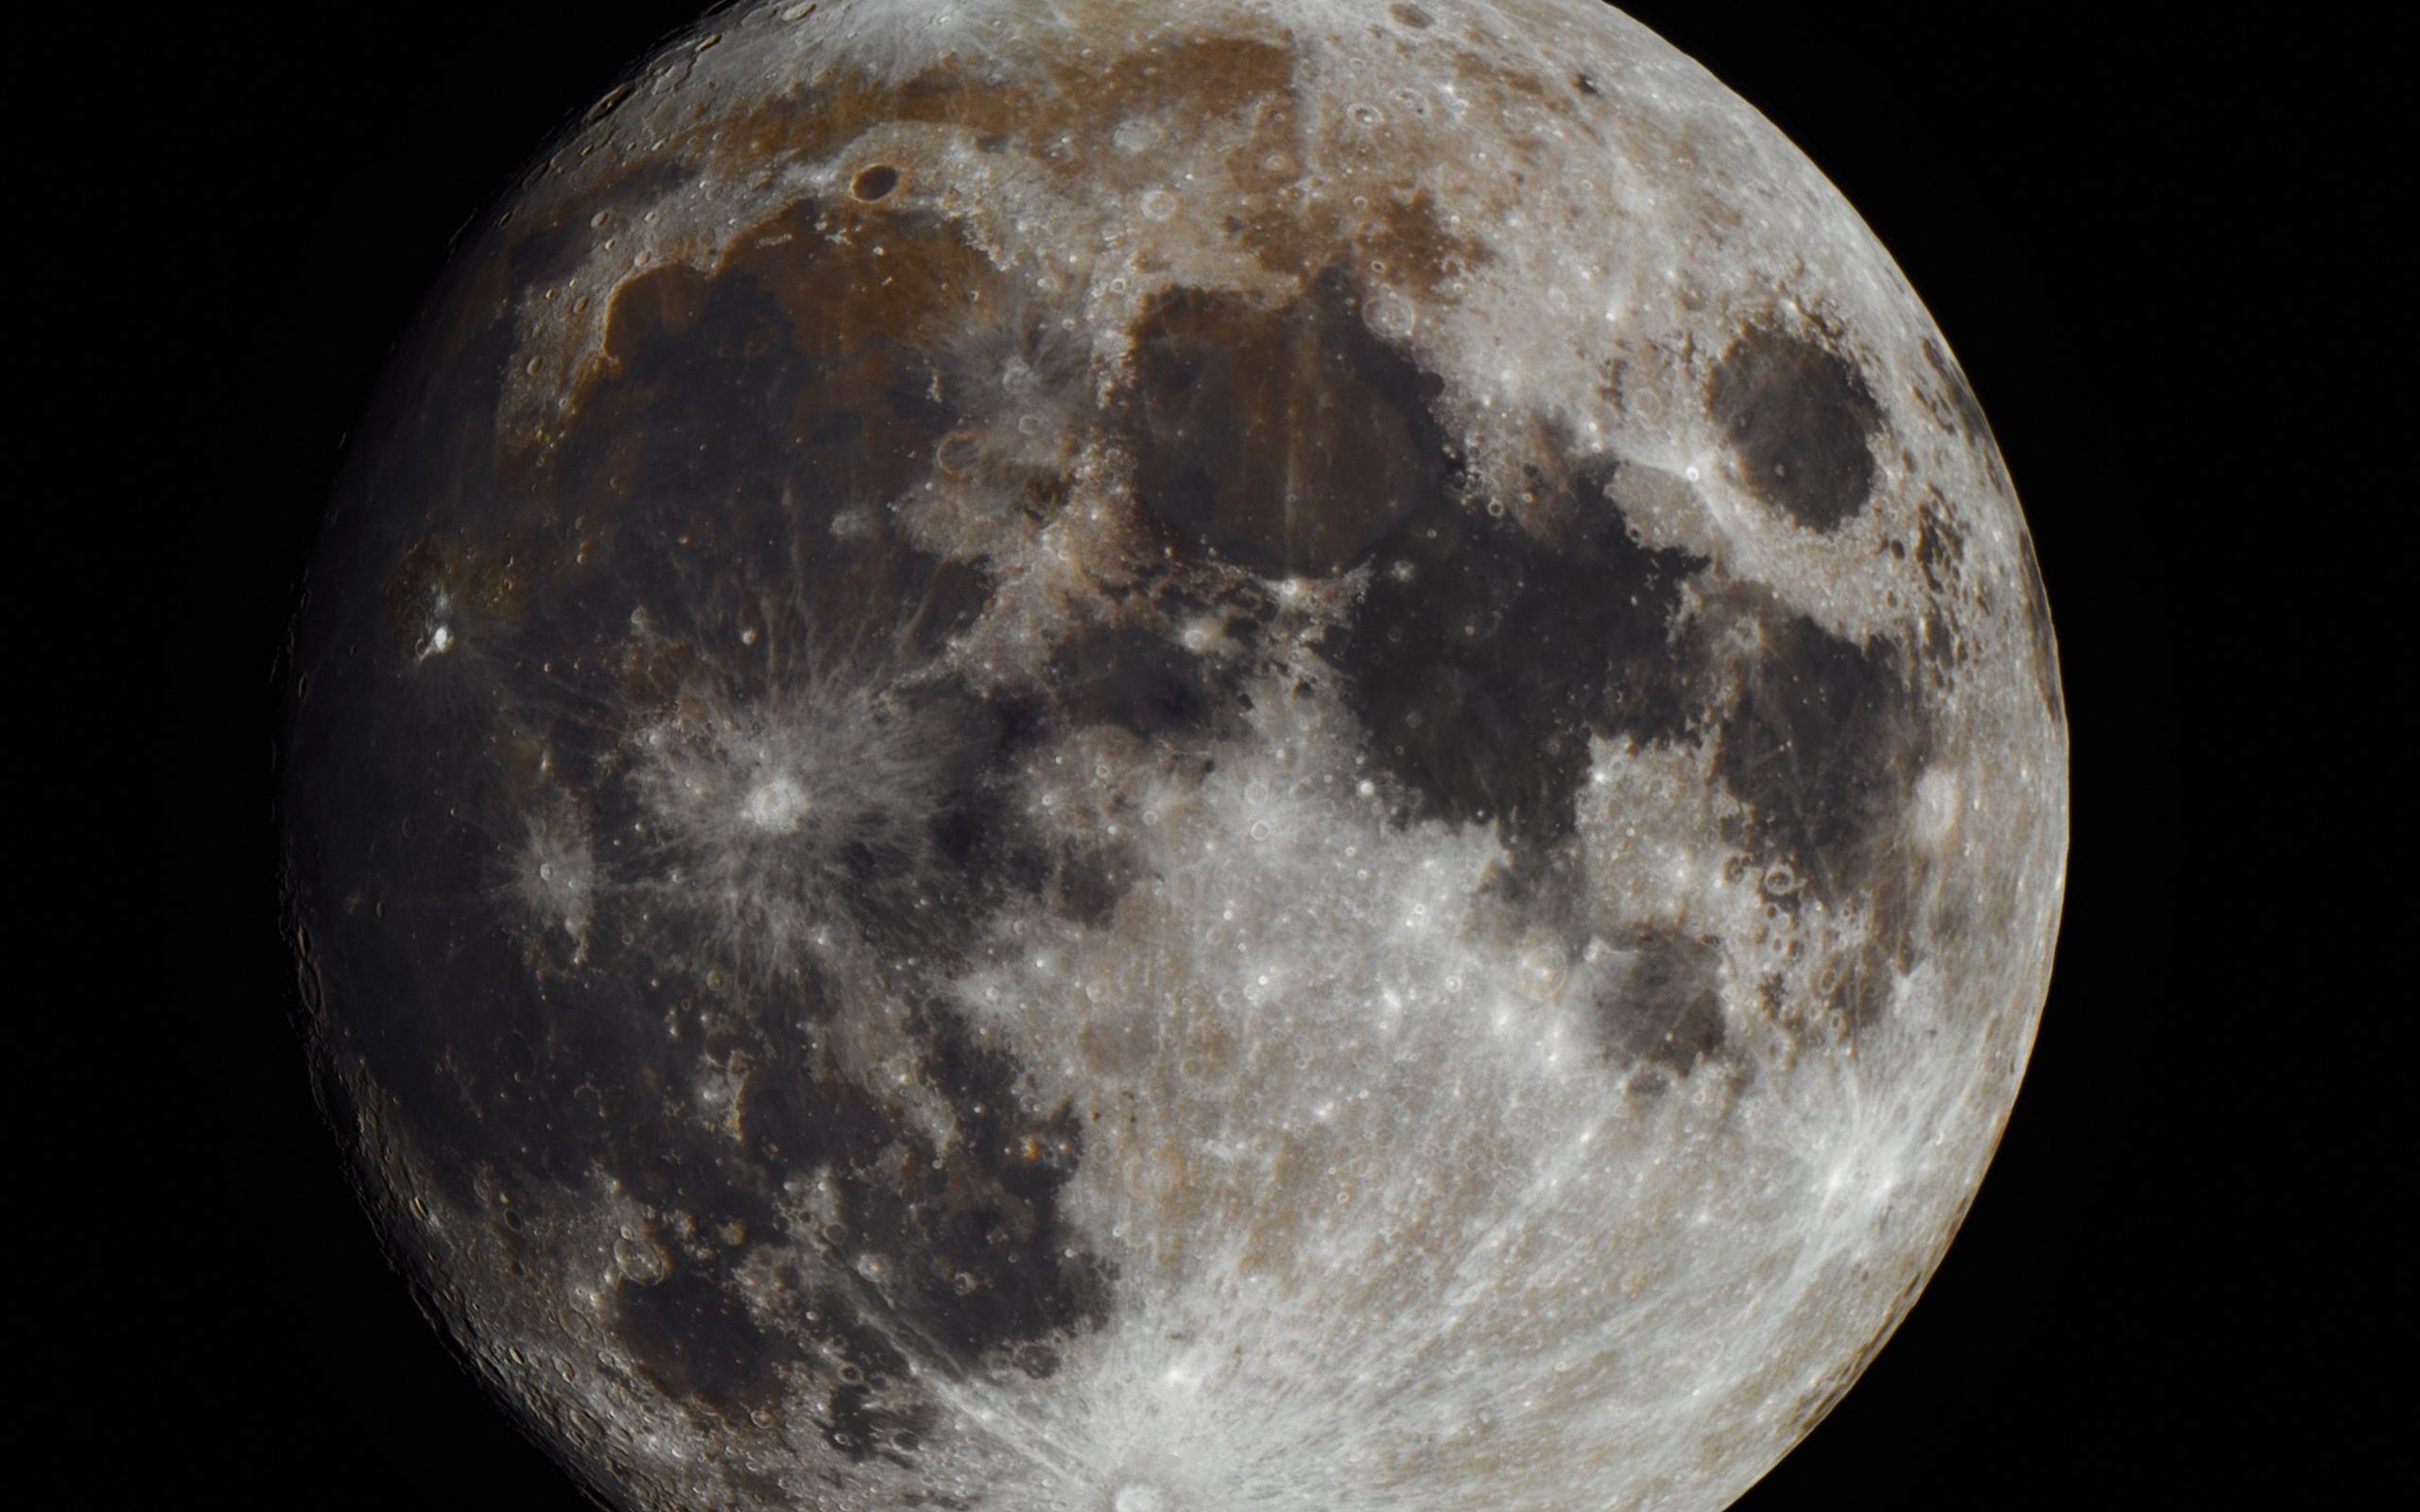 Moons satellite. Фото Луны. Луна фото со спутника. Фотографии Луны в высоком разрешении. Серый Спутник.